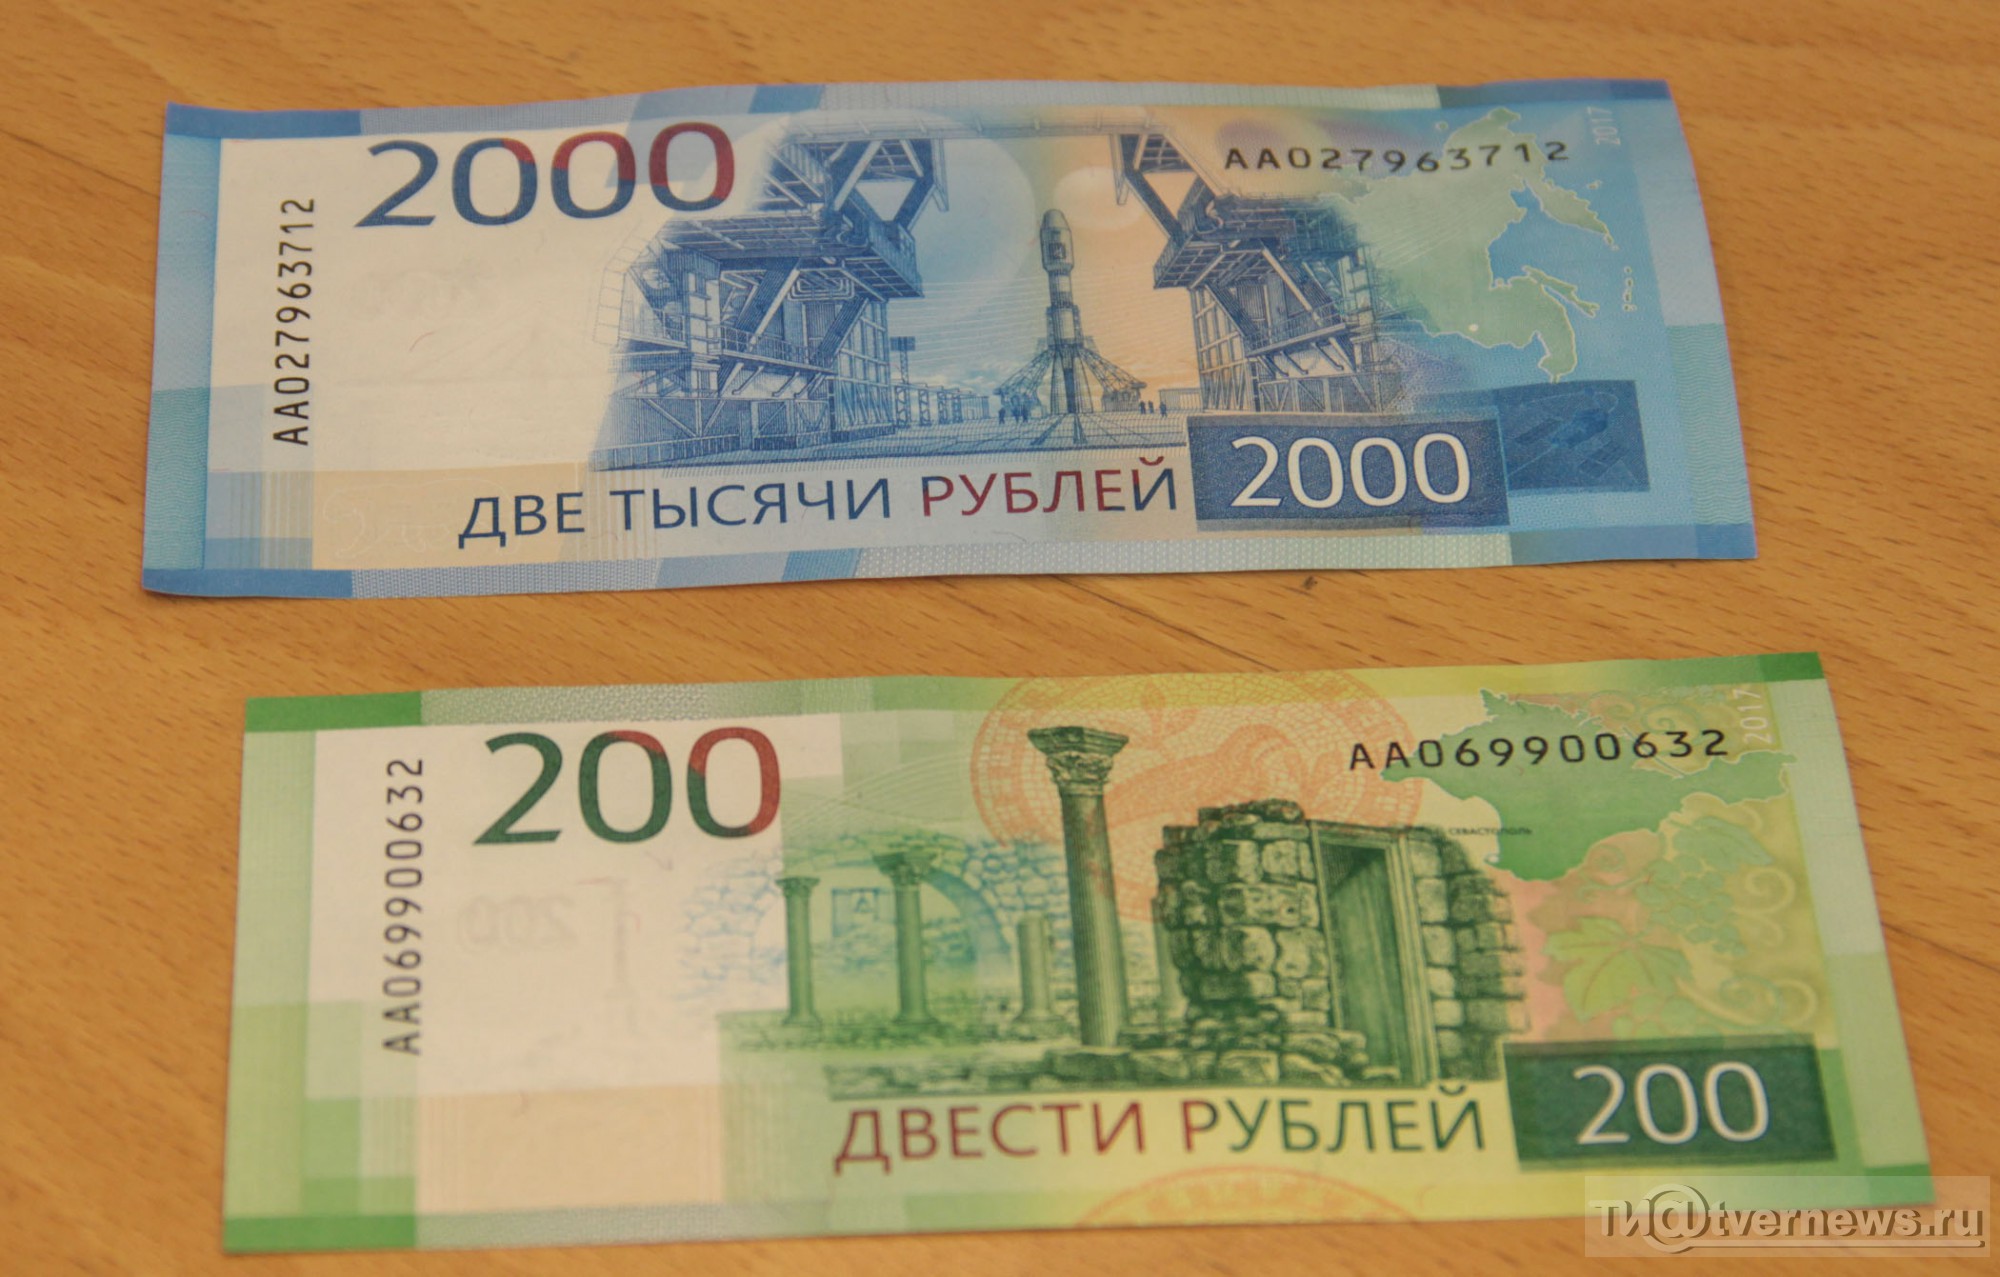 Новые купюры номиналом. 200 И 2000 рублей. Купюры 200 и 2000 рублей. 200 Рублей банкнота. Две тысячи рублей.